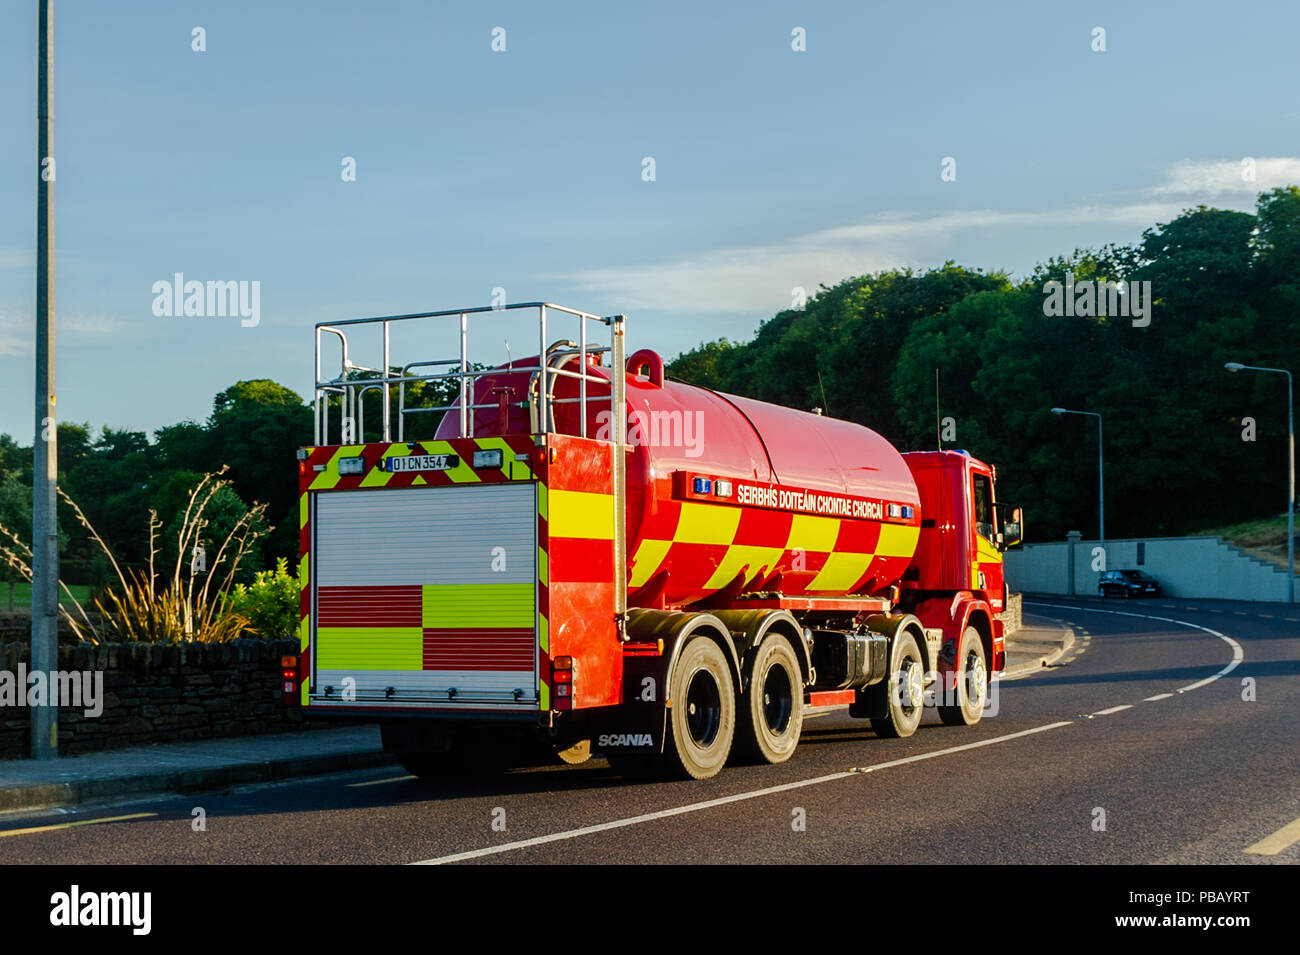 Le comté de Cork Fire Service camion-citerne à eau entraîne le long d'une route dans la région de Bantry, West Cork, Irlande. Banque D'Images